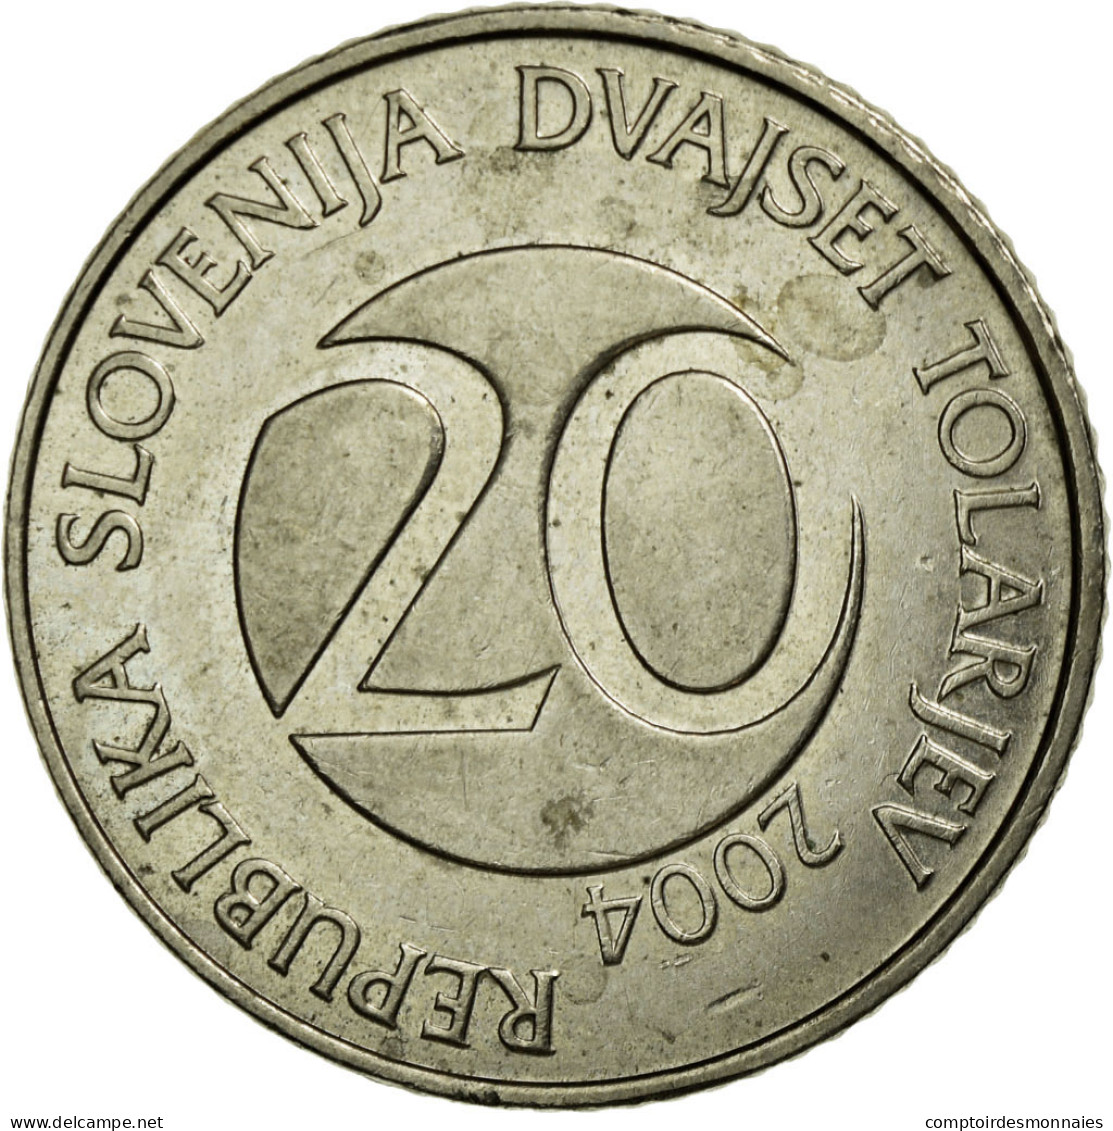 Monnaie, Slovénie, 20 Tolarjev, 2004, Kremnica, TTB, Copper-nickel, KM:51 - Slovénie